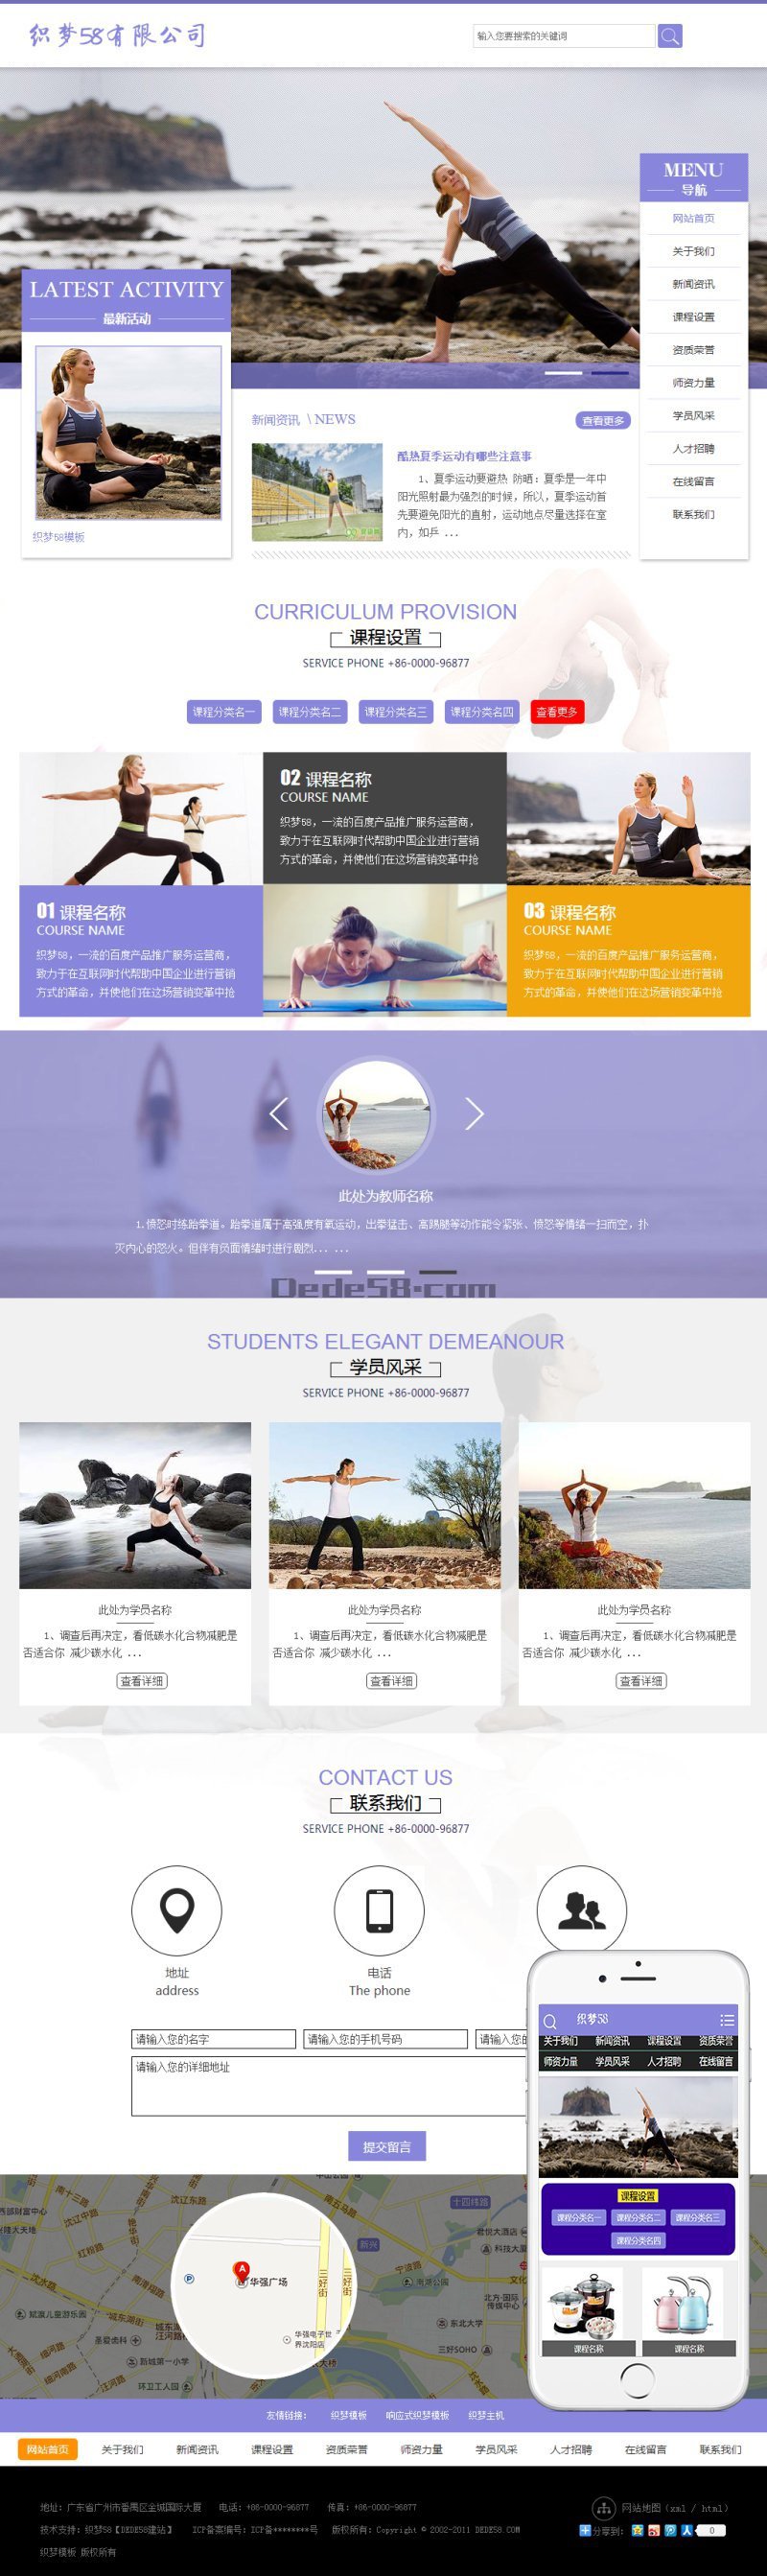 织梦生活健身瑜伽类网站织梦模板(带手机版)插图2